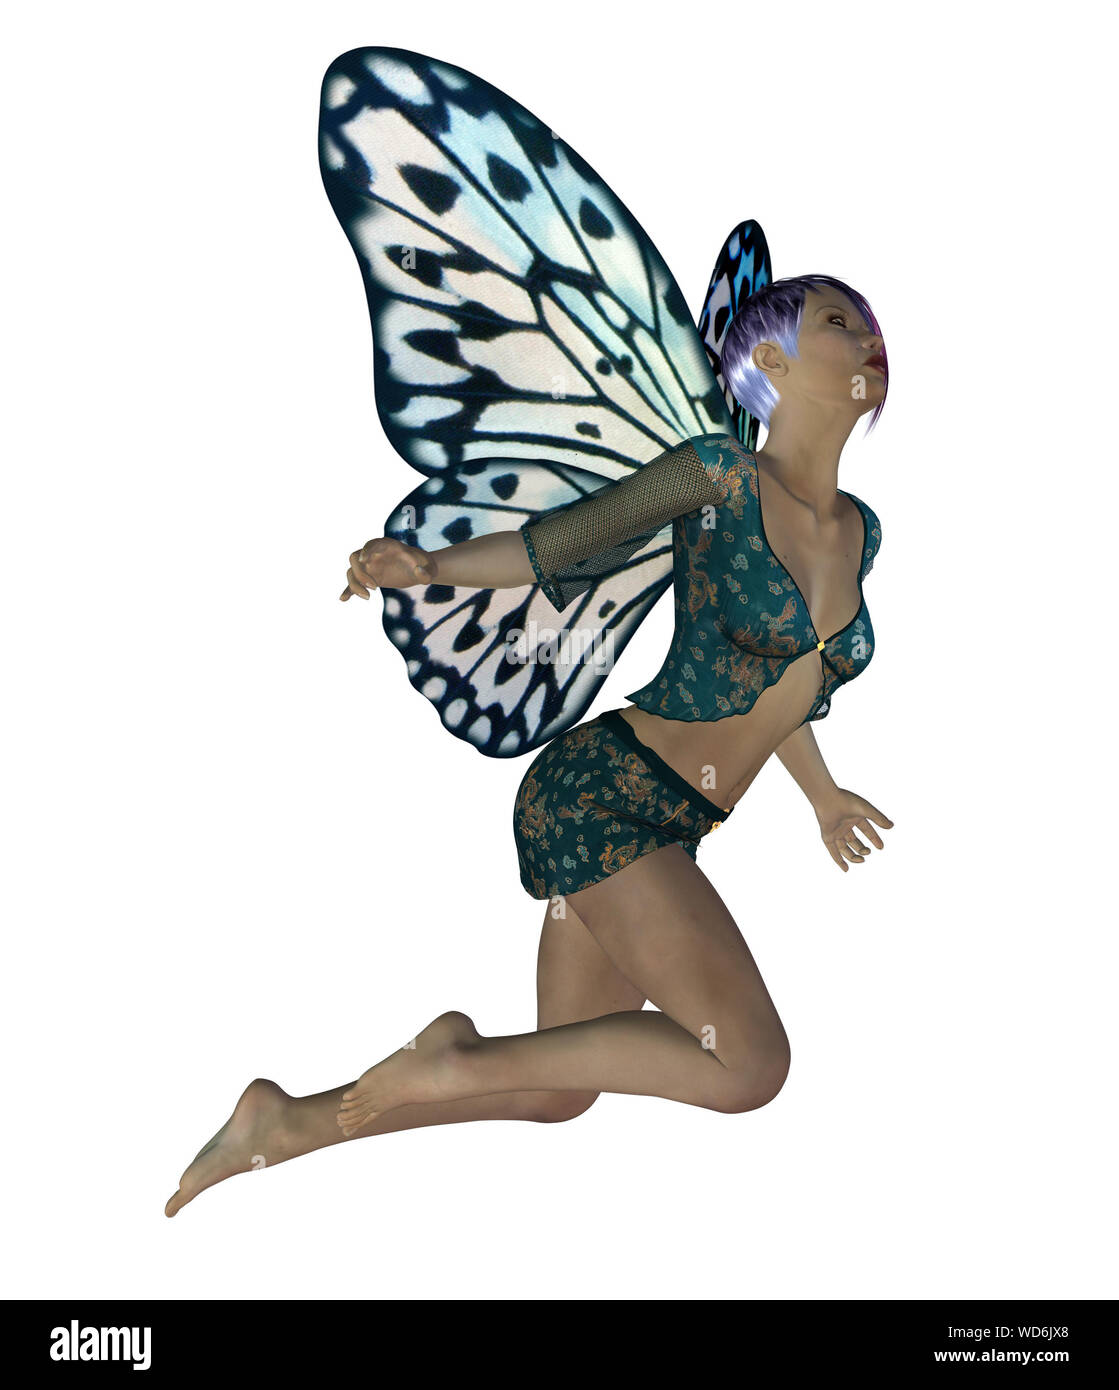 Imagen renderizada digitalmente de un hada con alas de mariposa